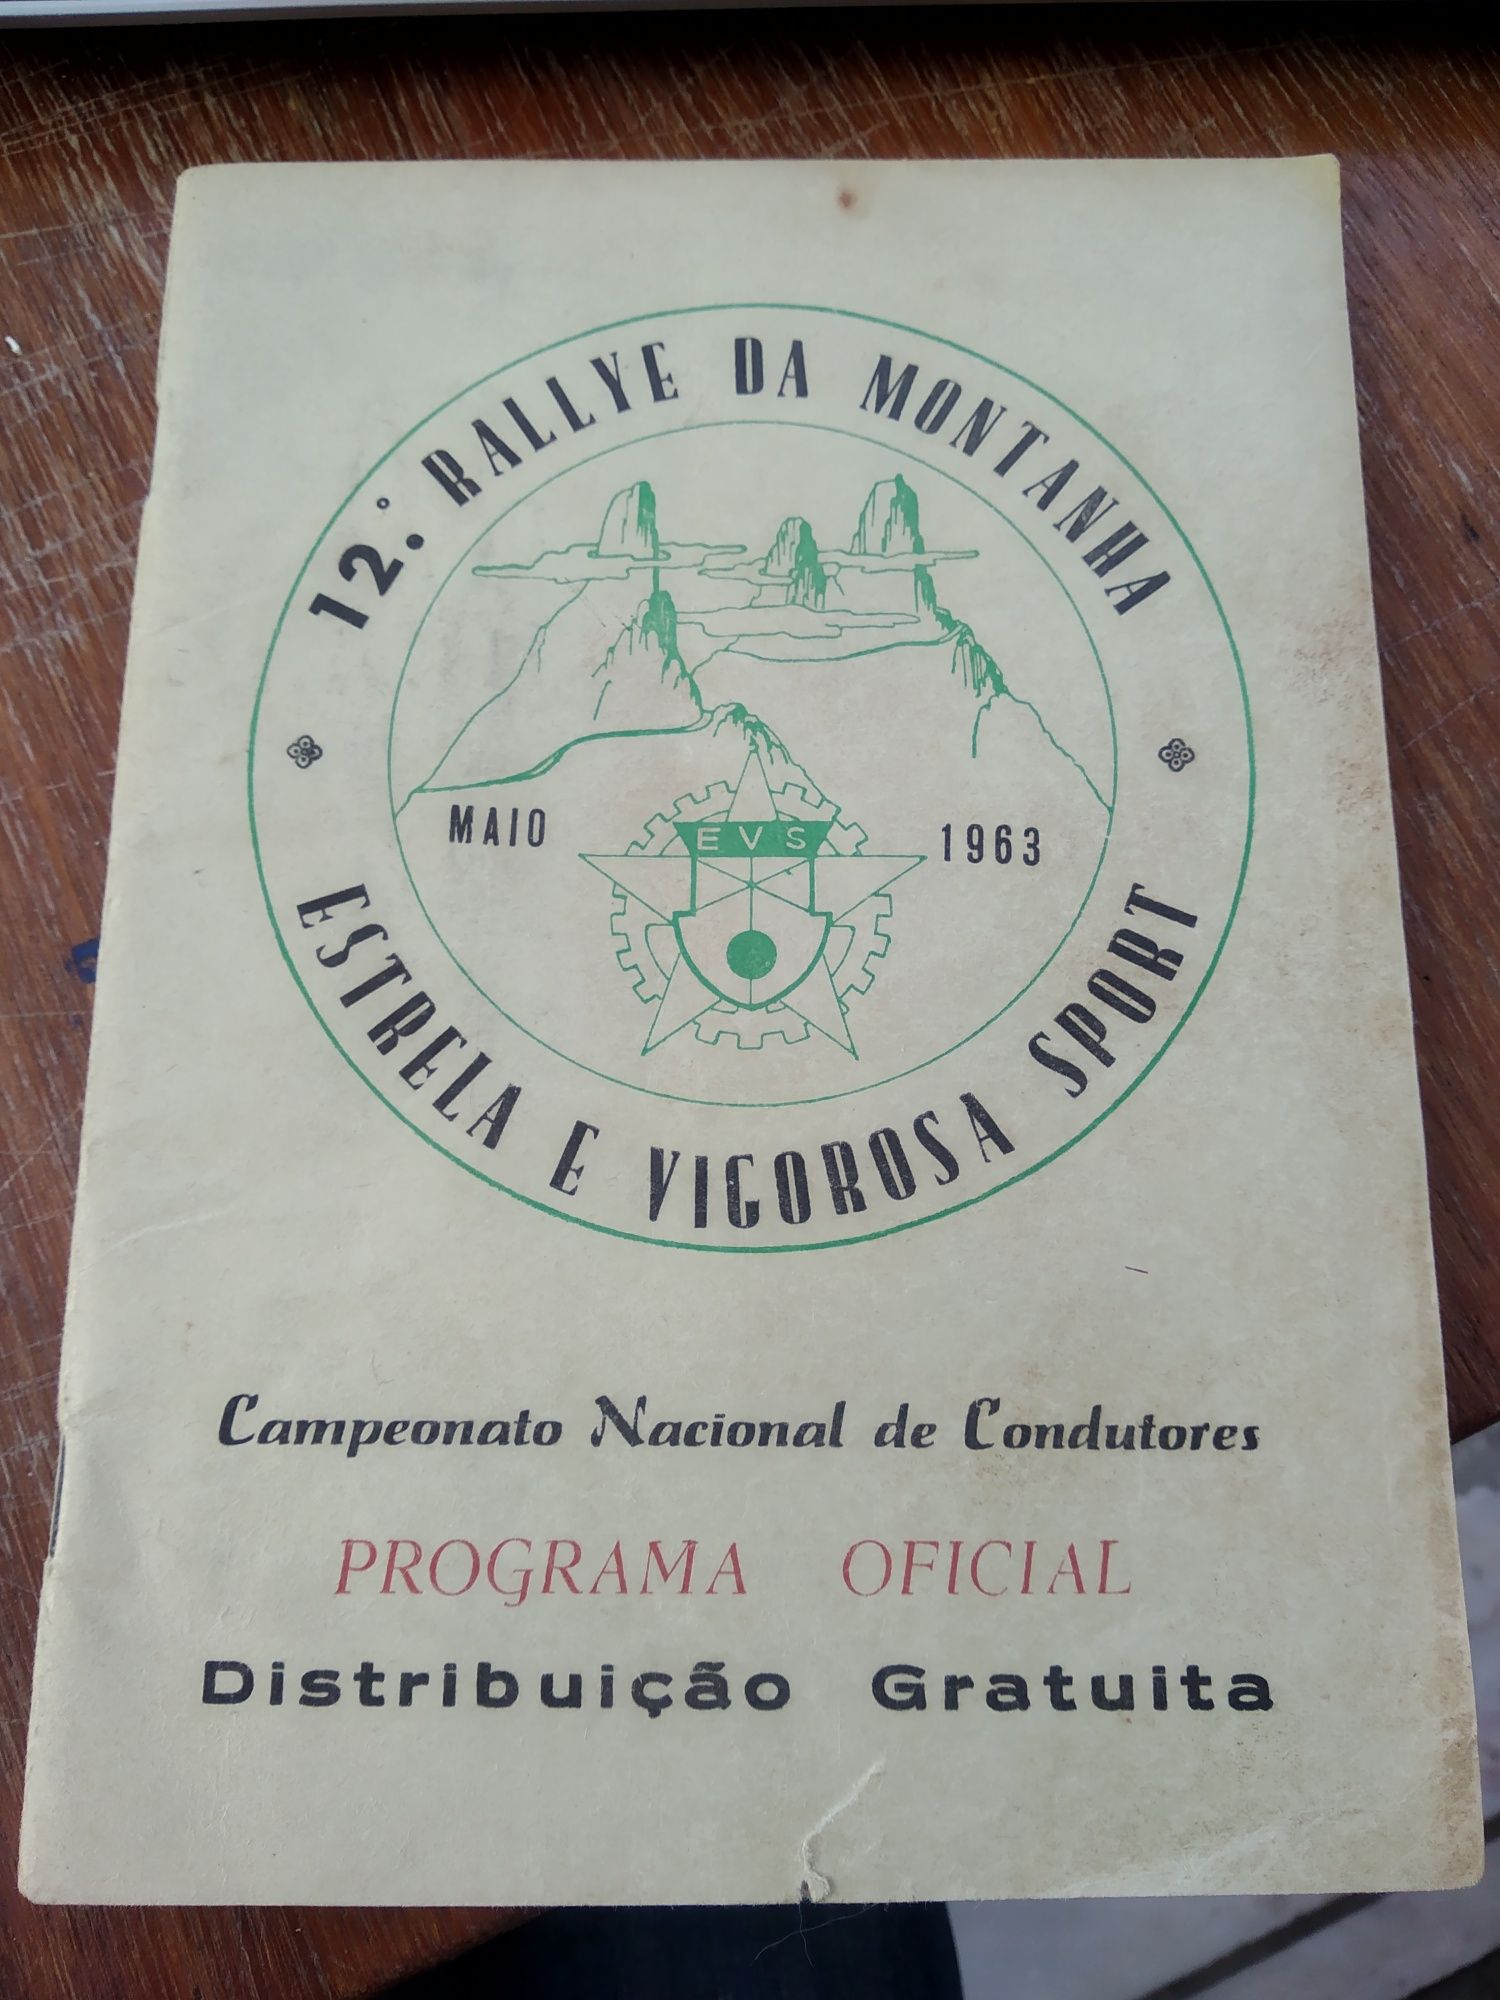 Programa oficial - 12° rallye da montanha - Maio 1963